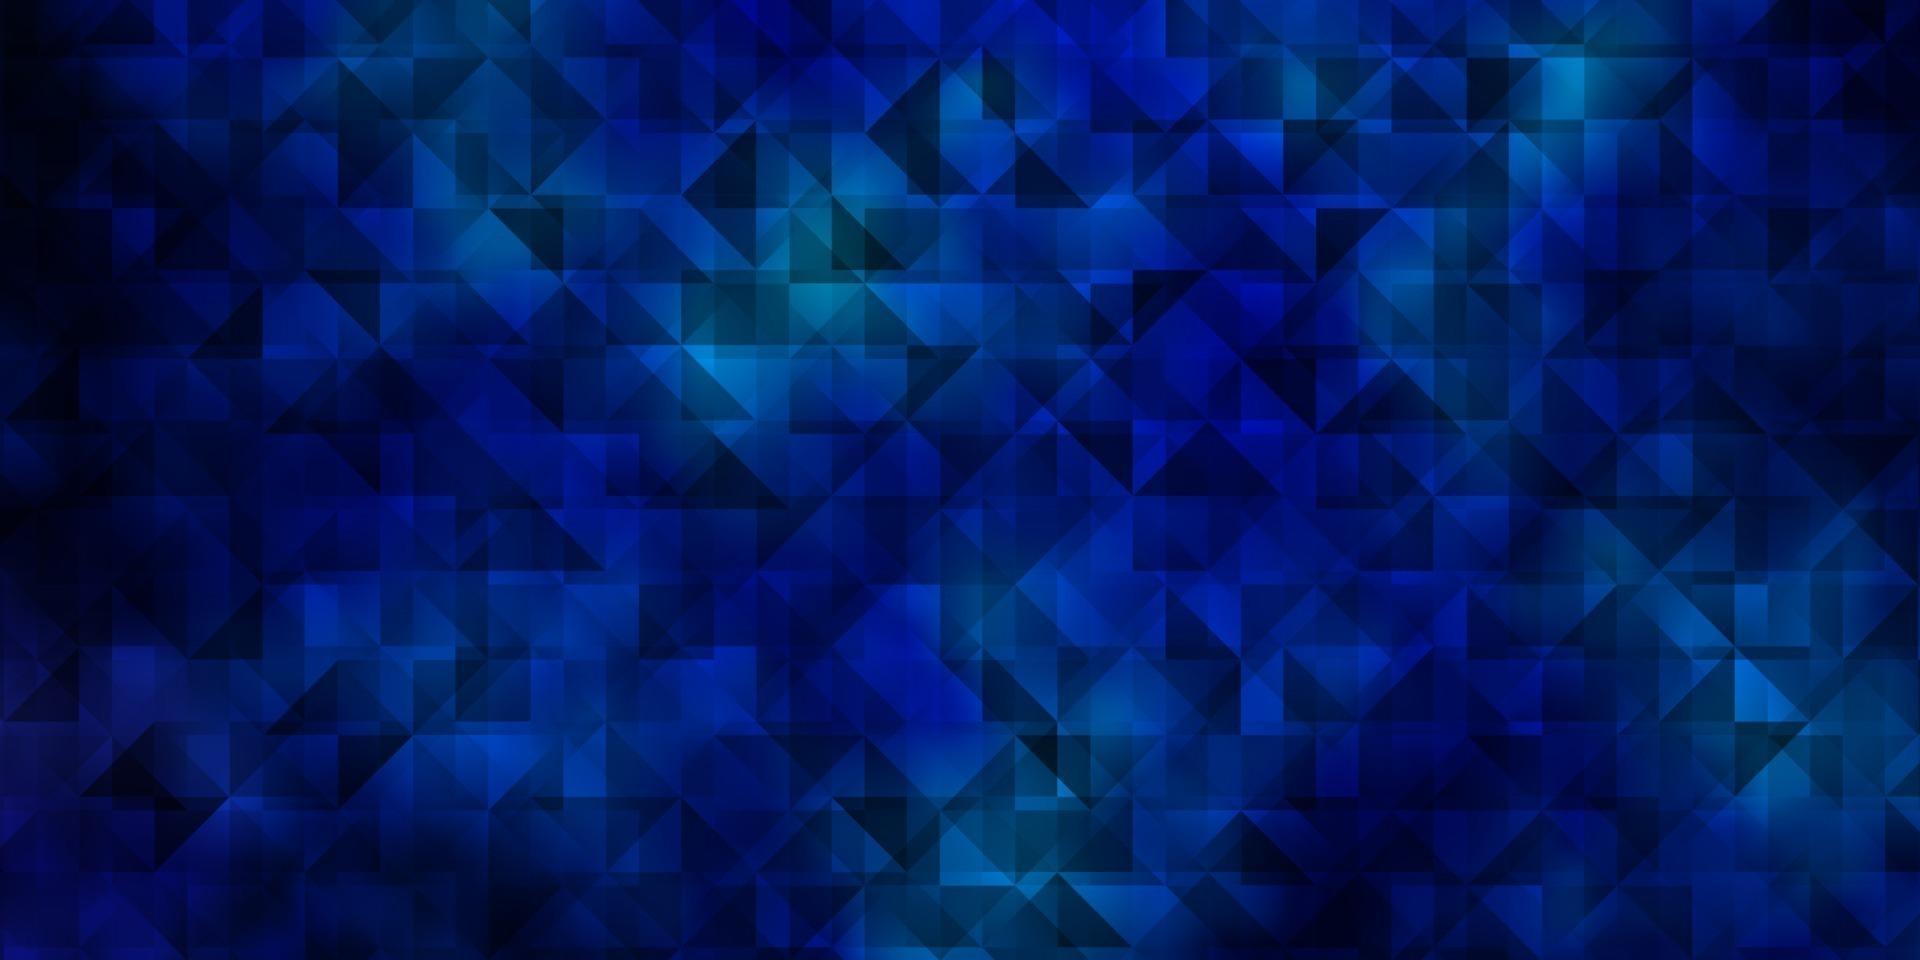 dunkelrosa, blaue Vektorschablone mit Kristallen, Dreiecken. vektor